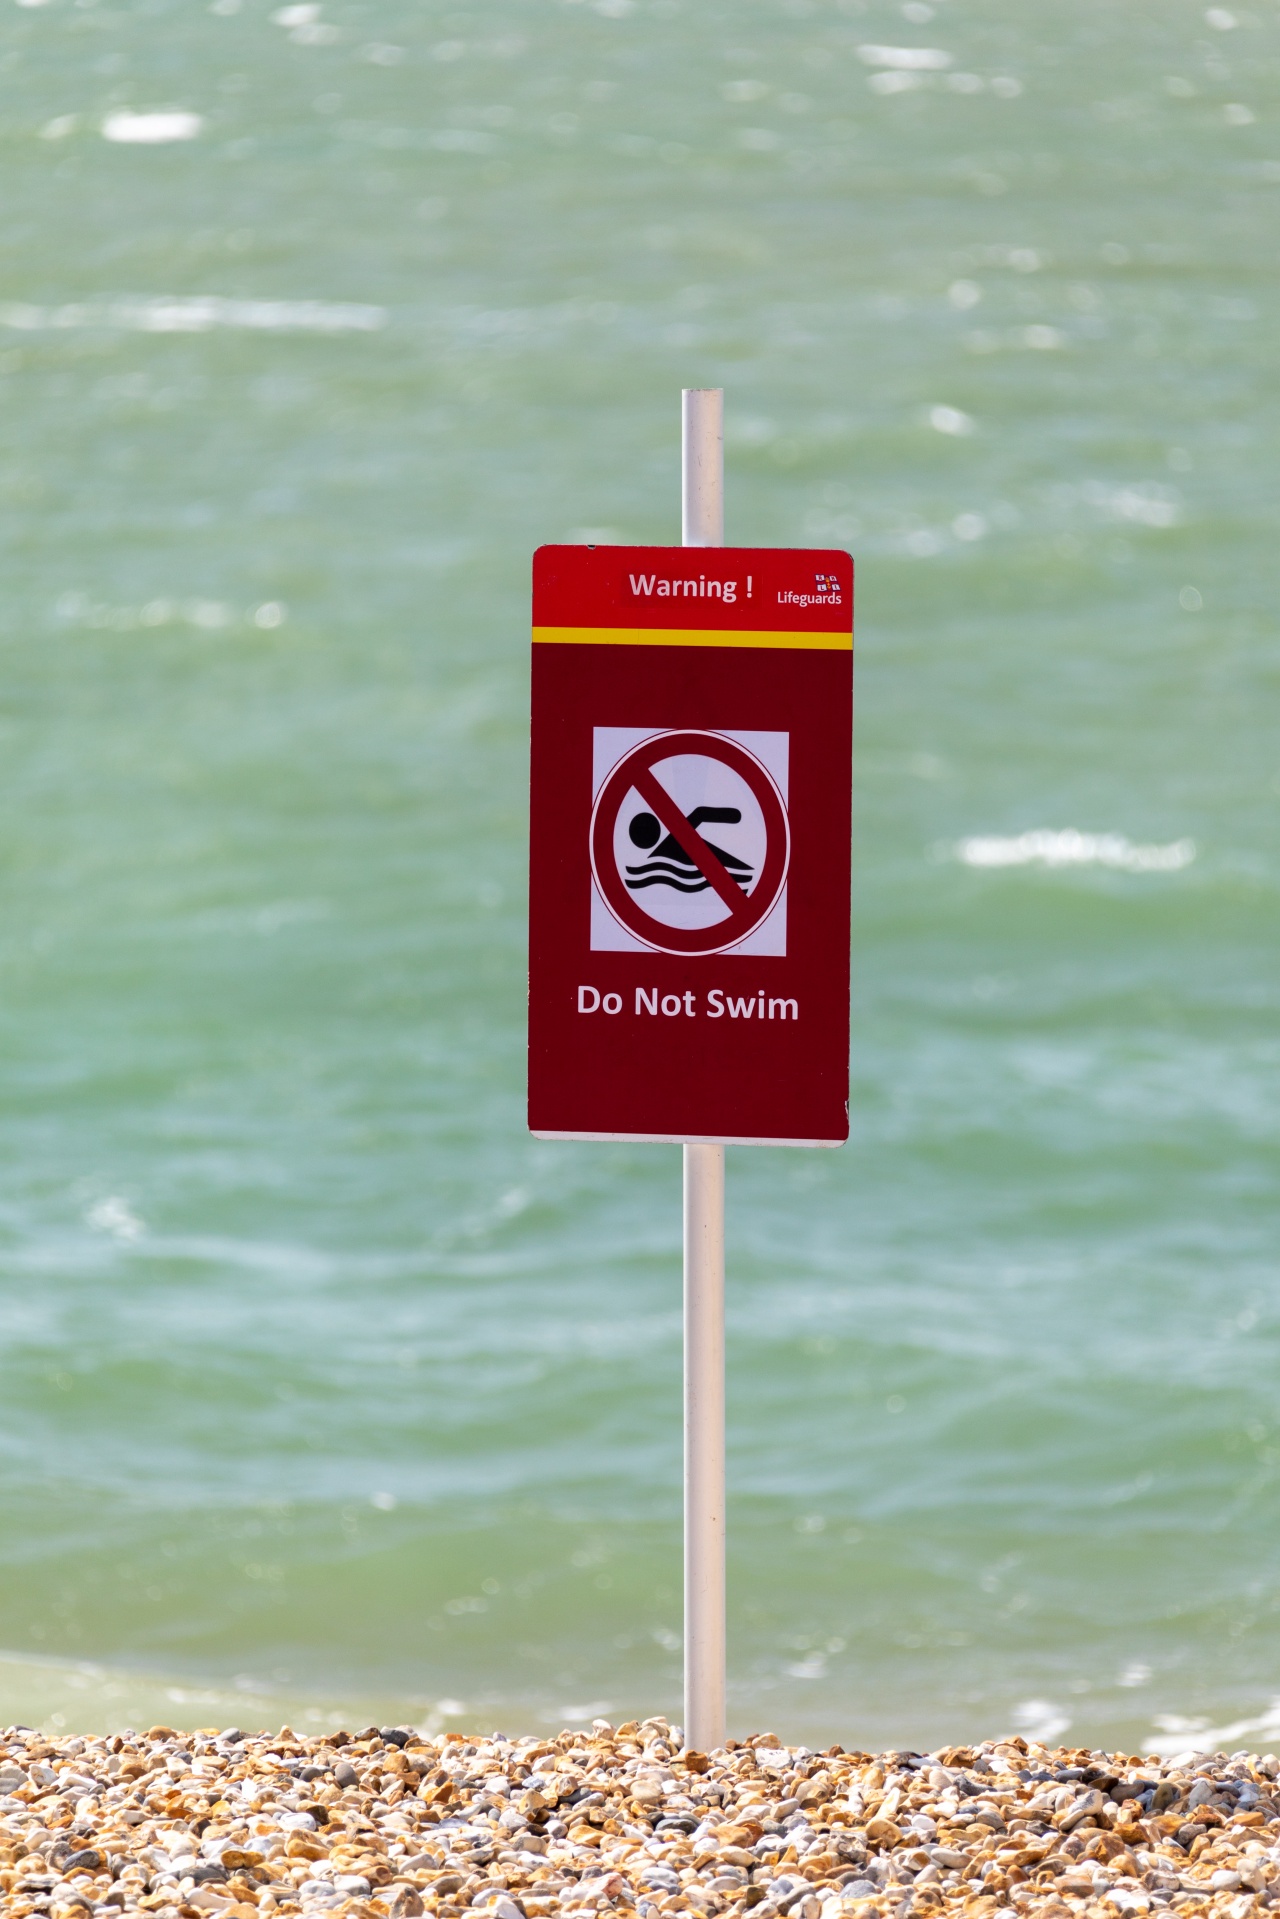 Nepoužívejte plavat